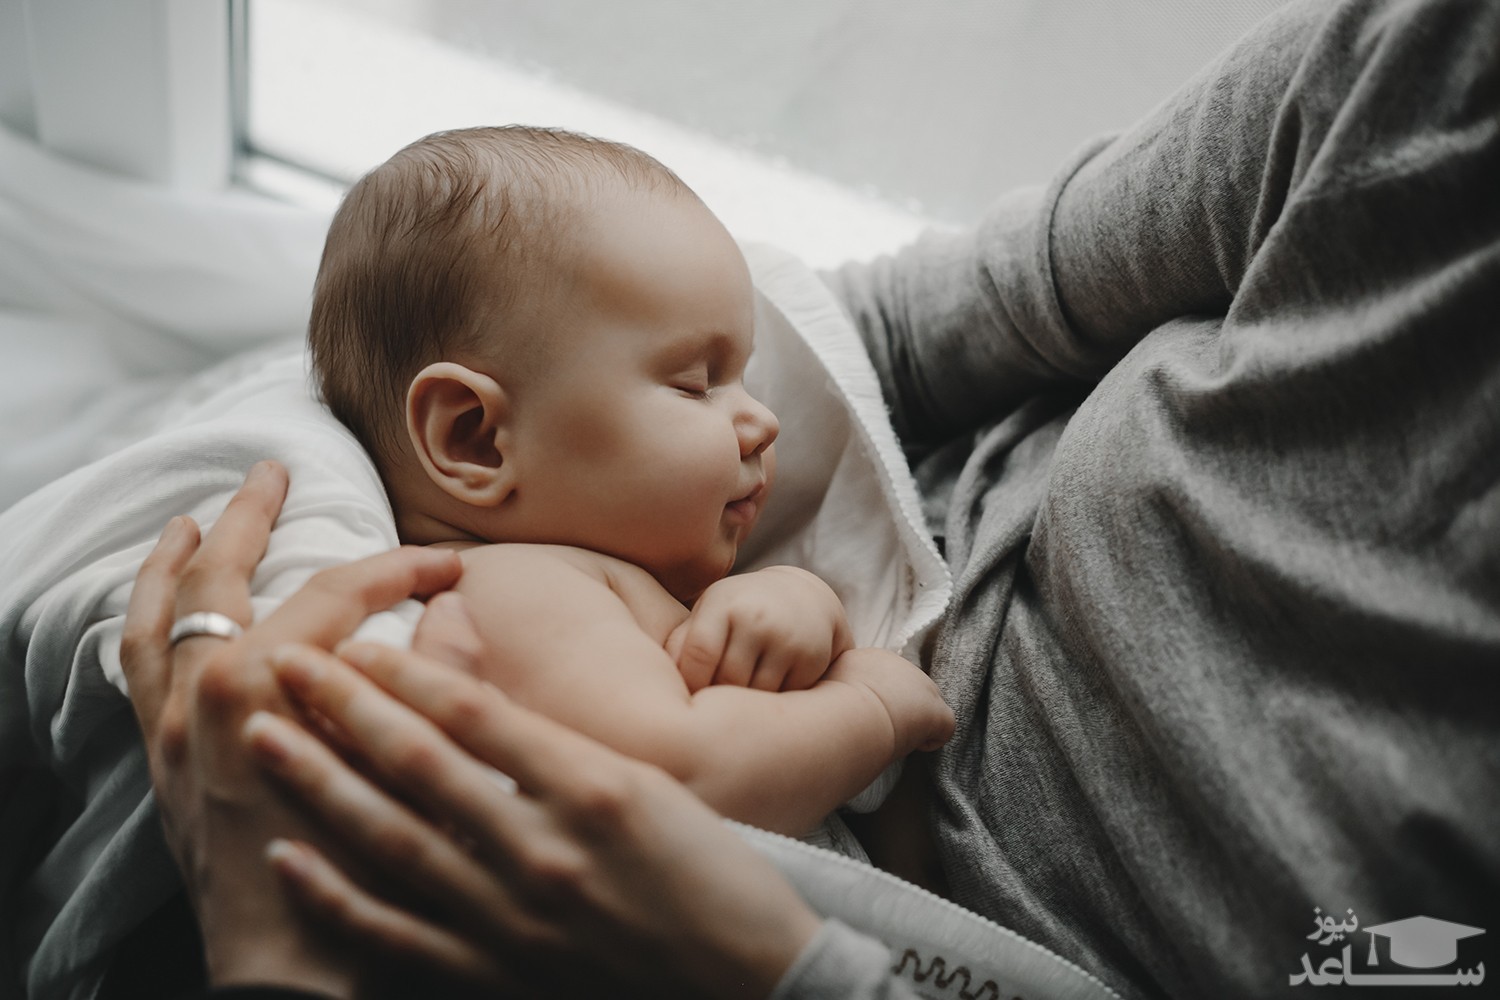 شیر خوردن نوزاد از یک سینه و راهکارهایی برای رفع آن